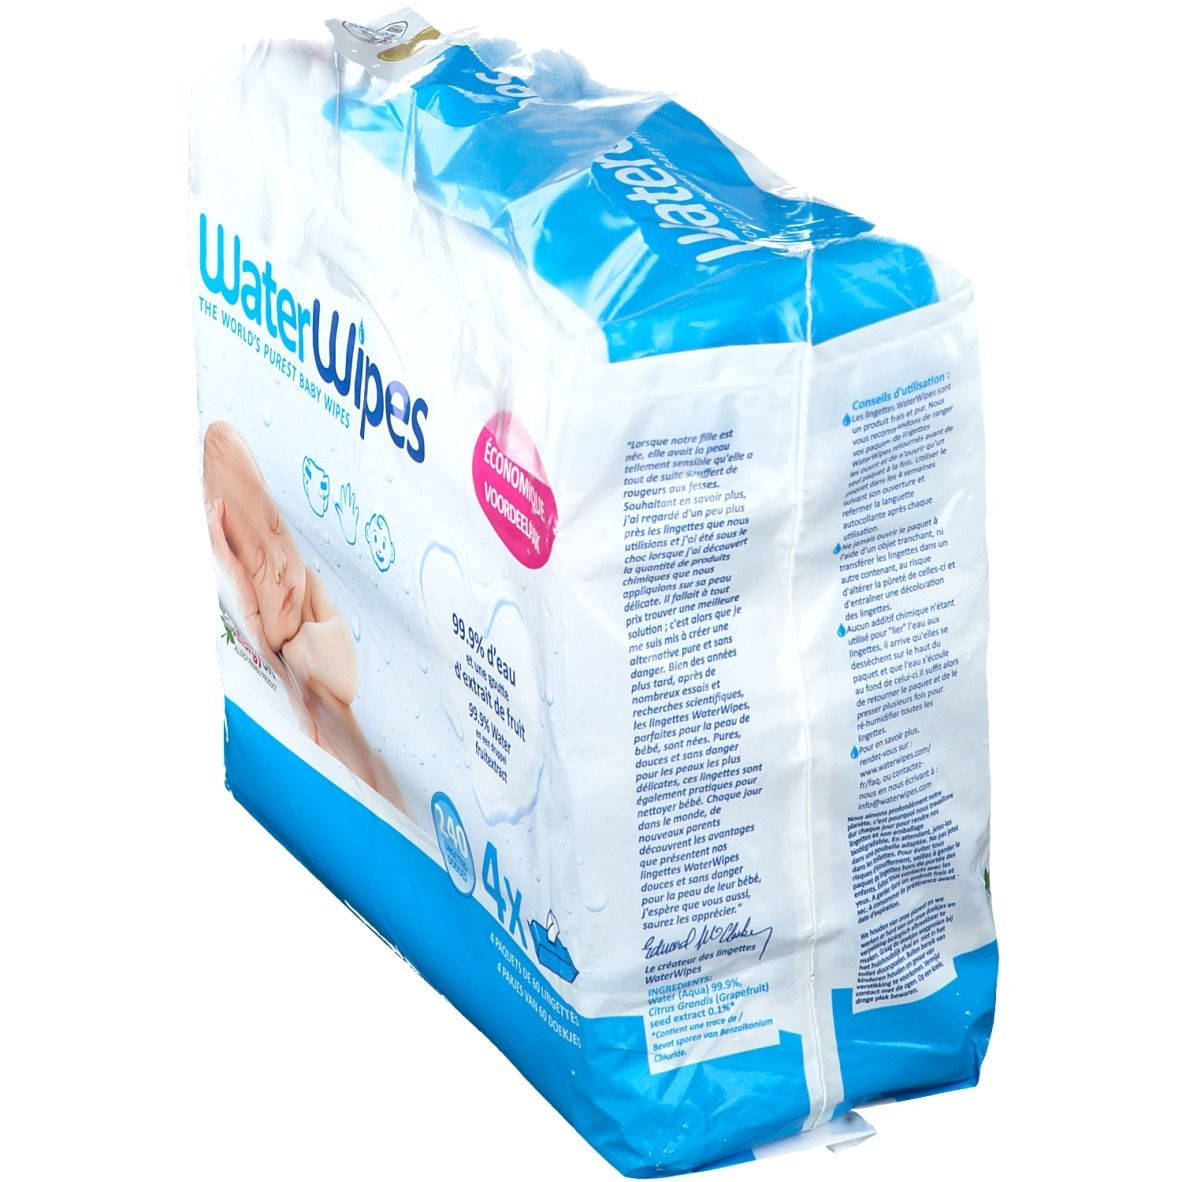 WaterWipes® Les lingettes pour bébé les plus pures du monde